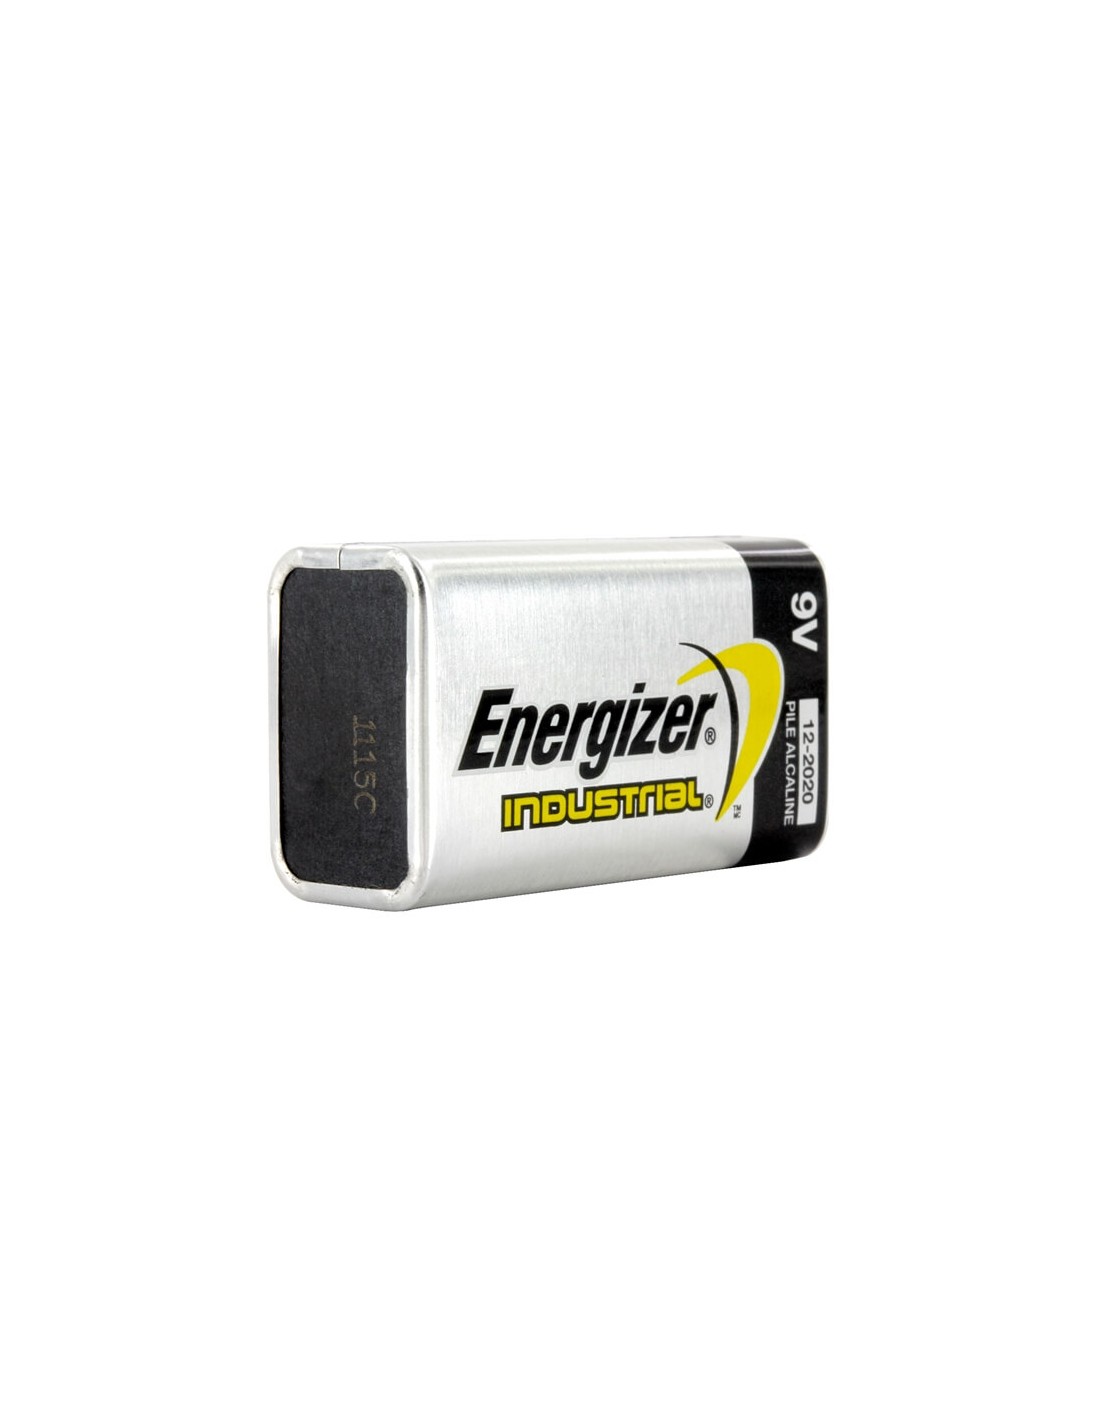 72pc Energizer INDUSTRIAL 9V Alkaline Battery EN22 Replaces 6LR61